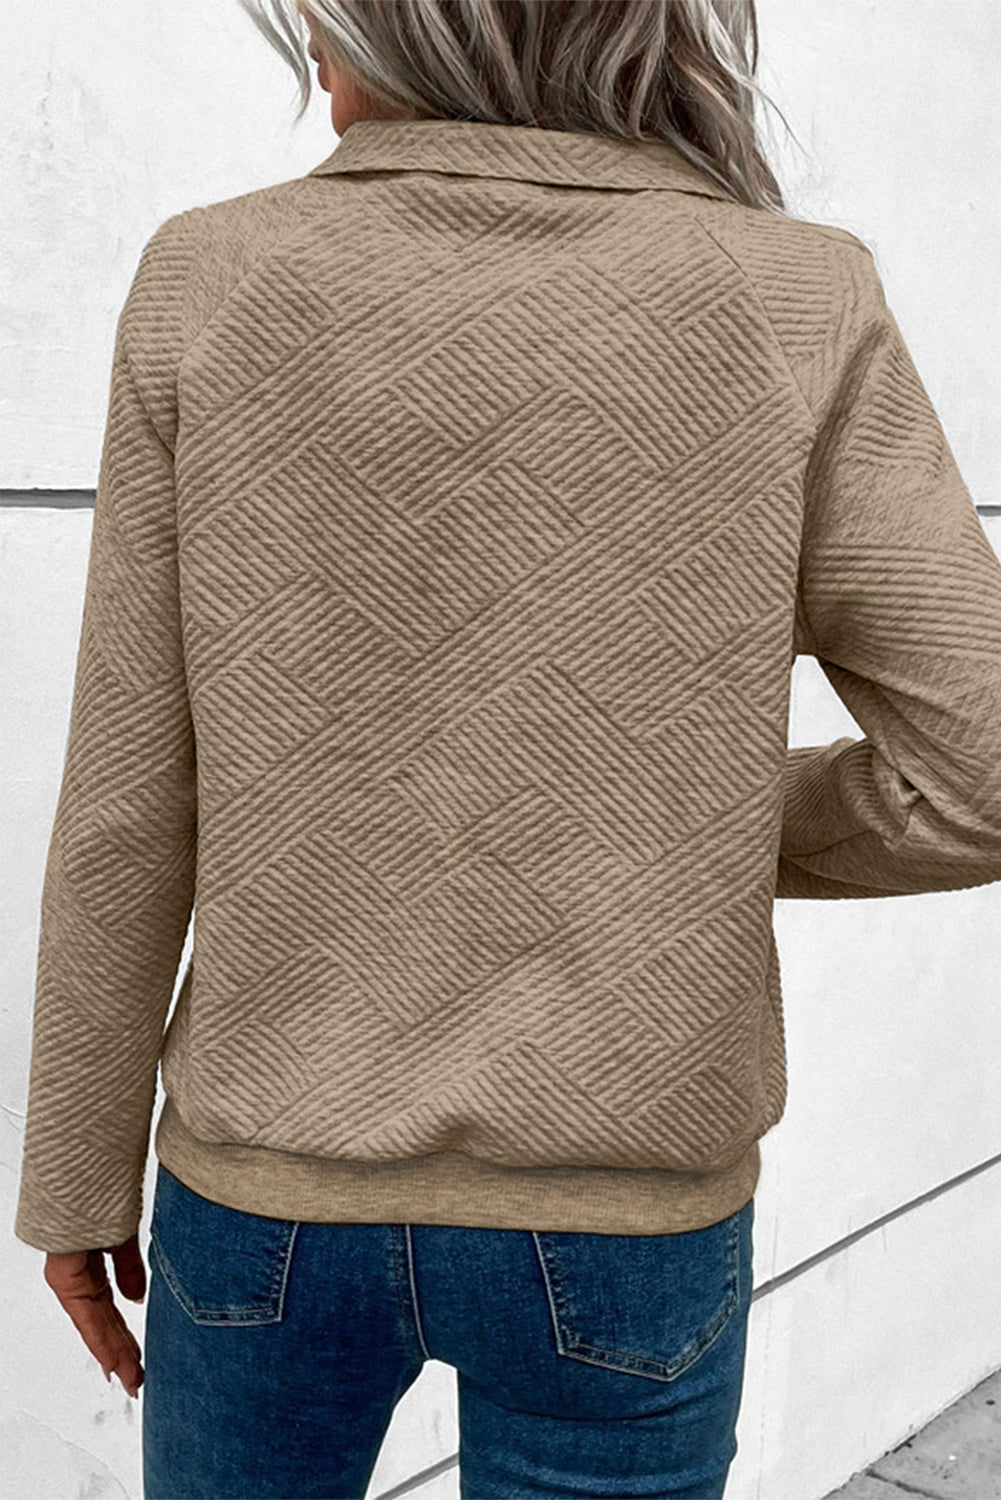 Hellkhakifarbenes, strukturiertes Strick-Sweatshirt mit Kängurutasche und Knöpfen